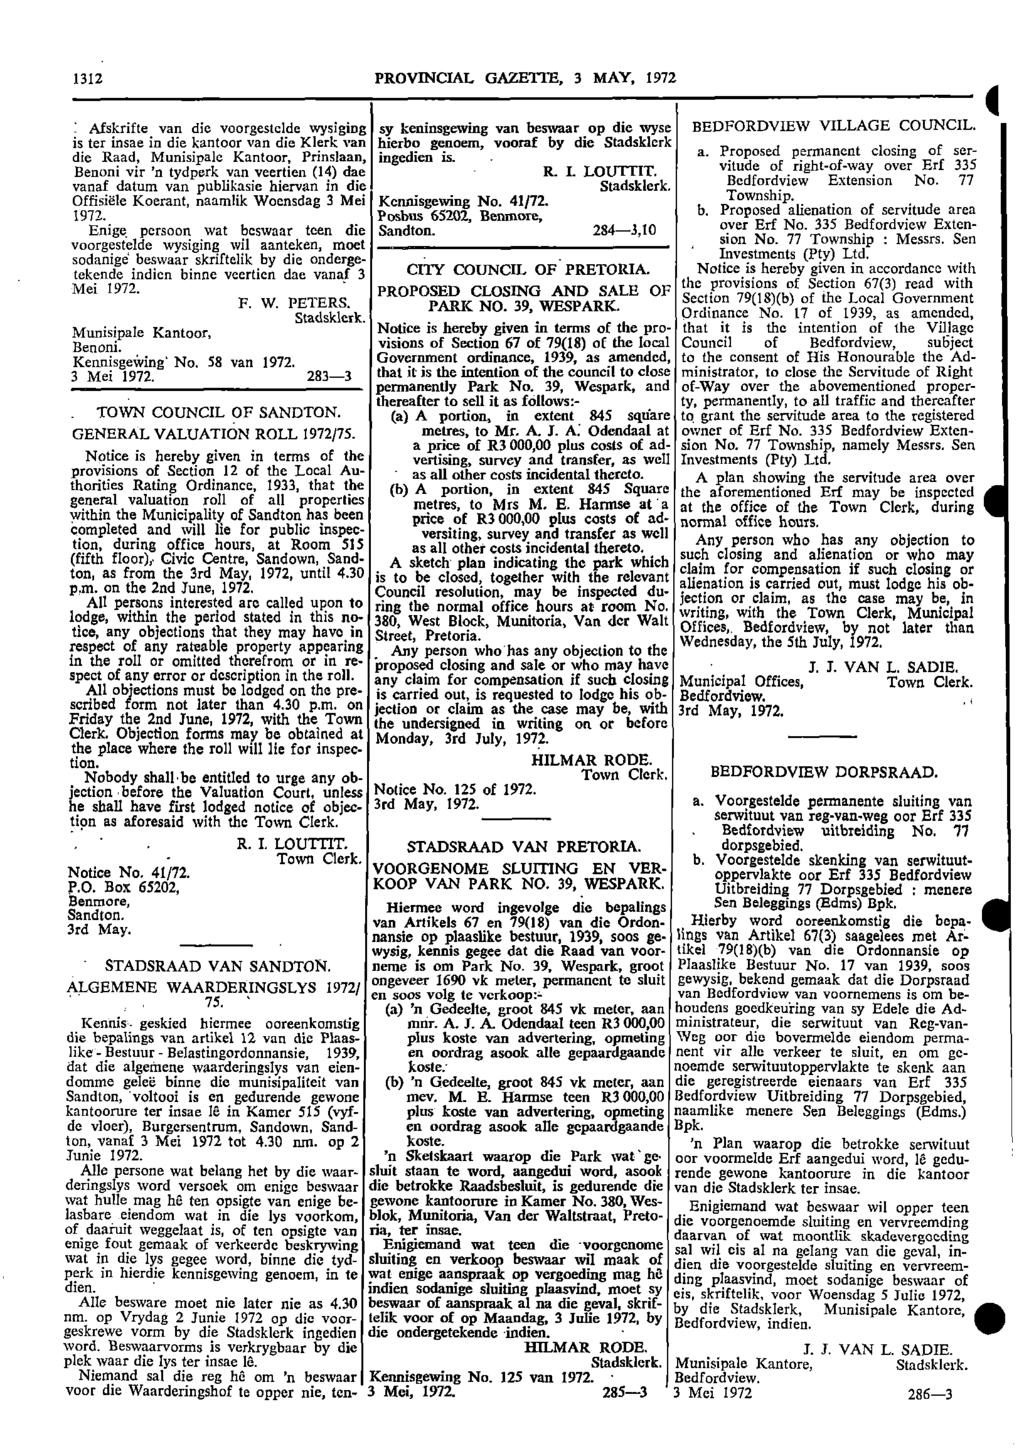 1312 PROVINCIAL GAZETTE, 3 MAY, 1972 Afskrifte van die voorgestclde wysiging sy keninsgewing van beswaar op die wyse BEDFORDVIEW VILLAGE COUNCIL is ter insae in die kantoor van die Klerk van hierbo